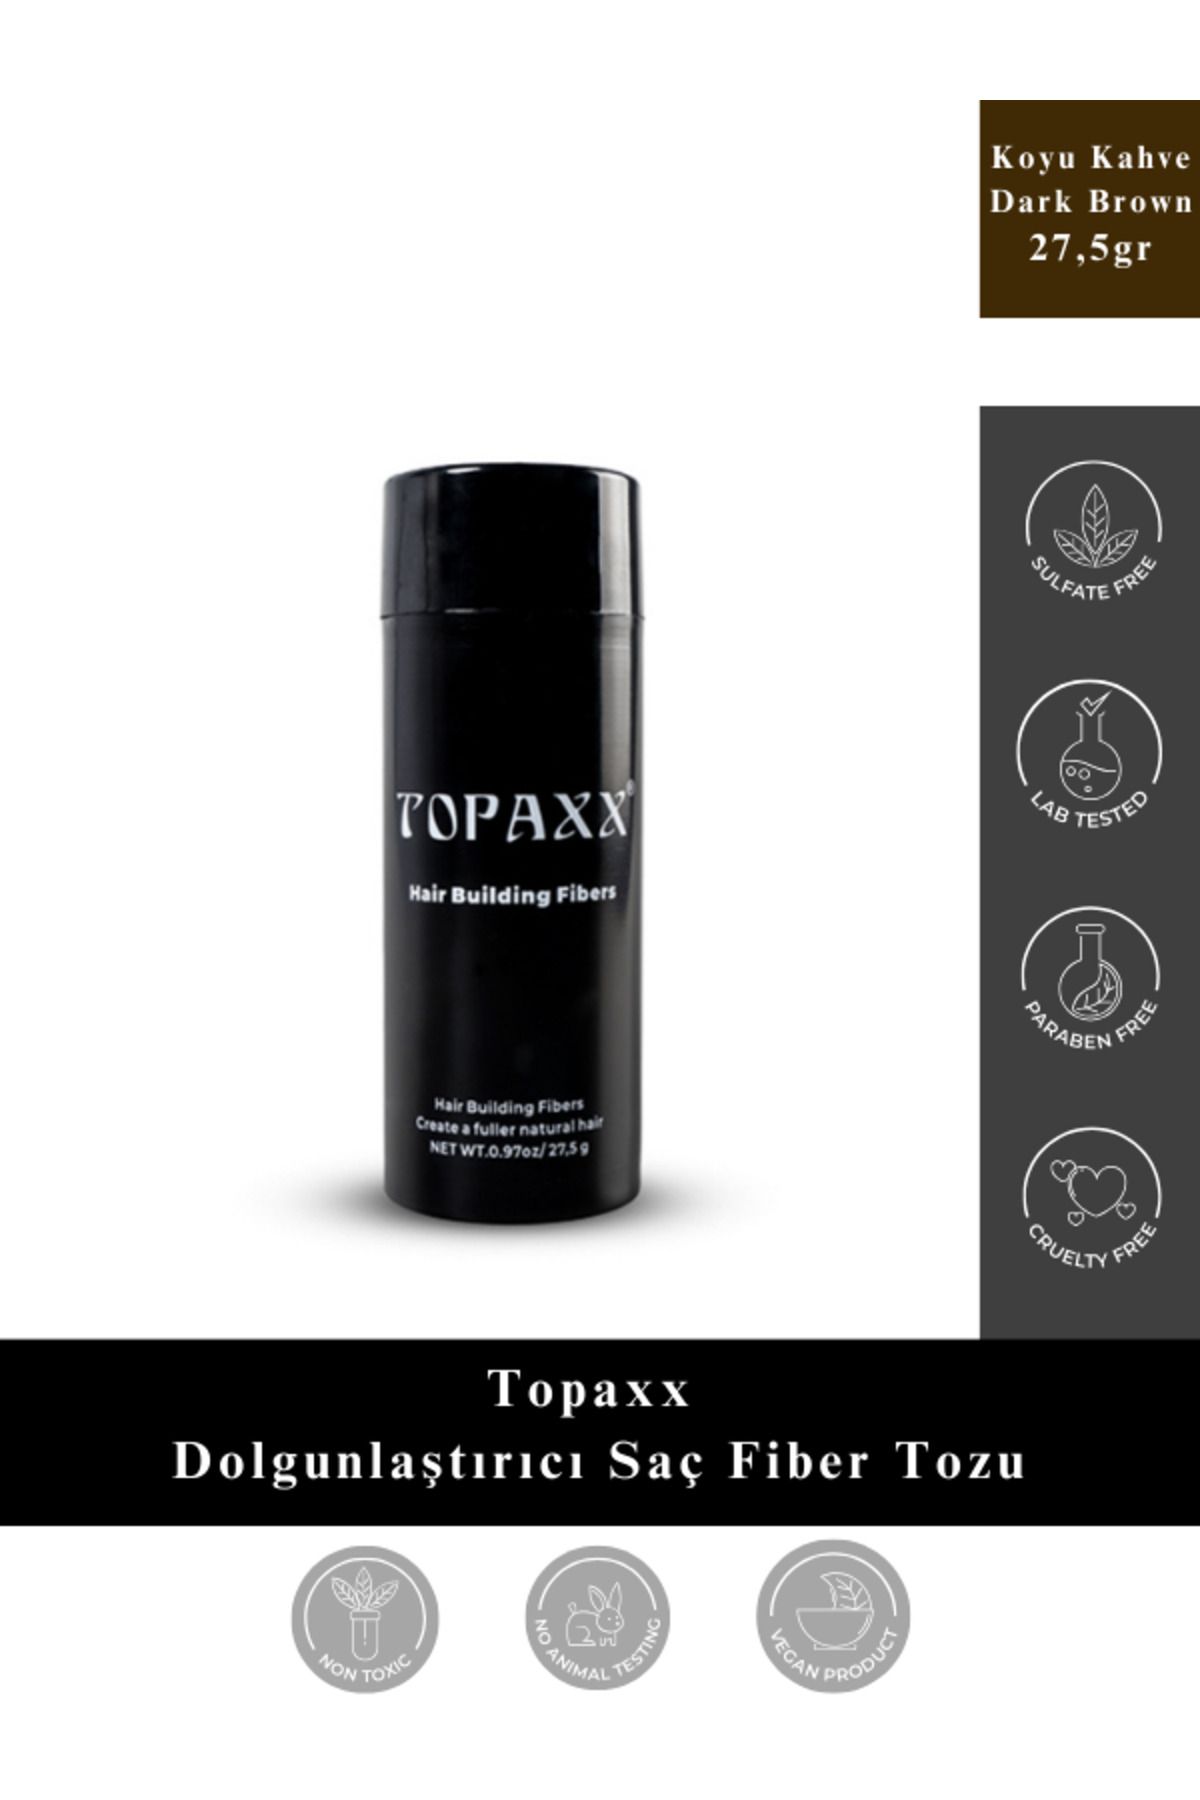 Topaxx Koyu Kahve/dark Brown Dolgunlaştırıcı Saç Fiber Topik Tozu 27,5 gr